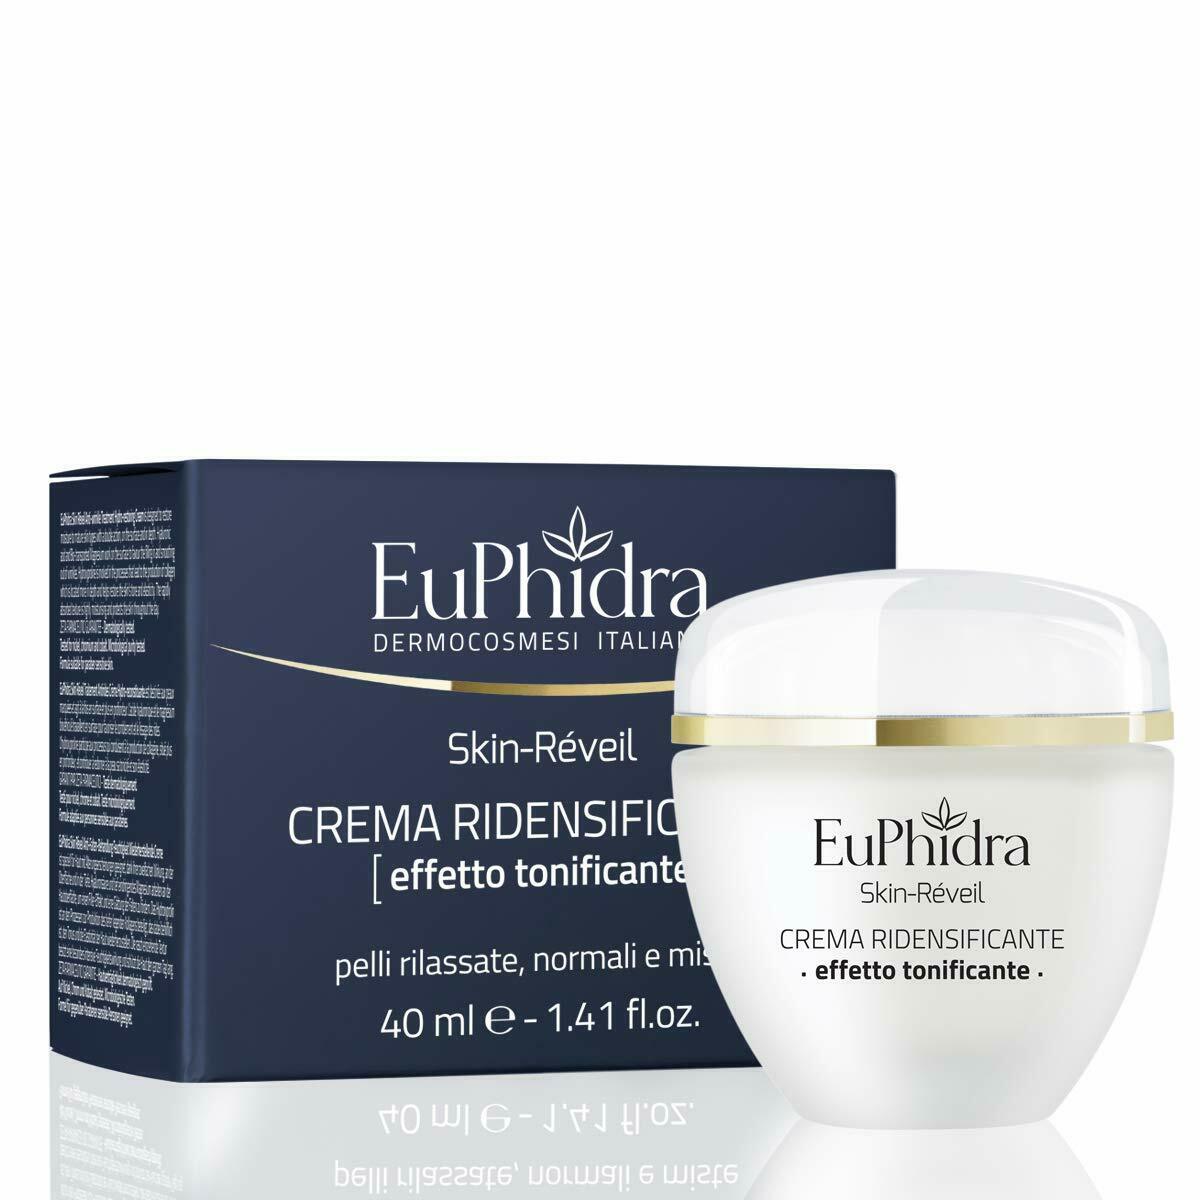 Euphidra Skin Réveil Crema Ridensificante Effetto Tonificante - 40ml